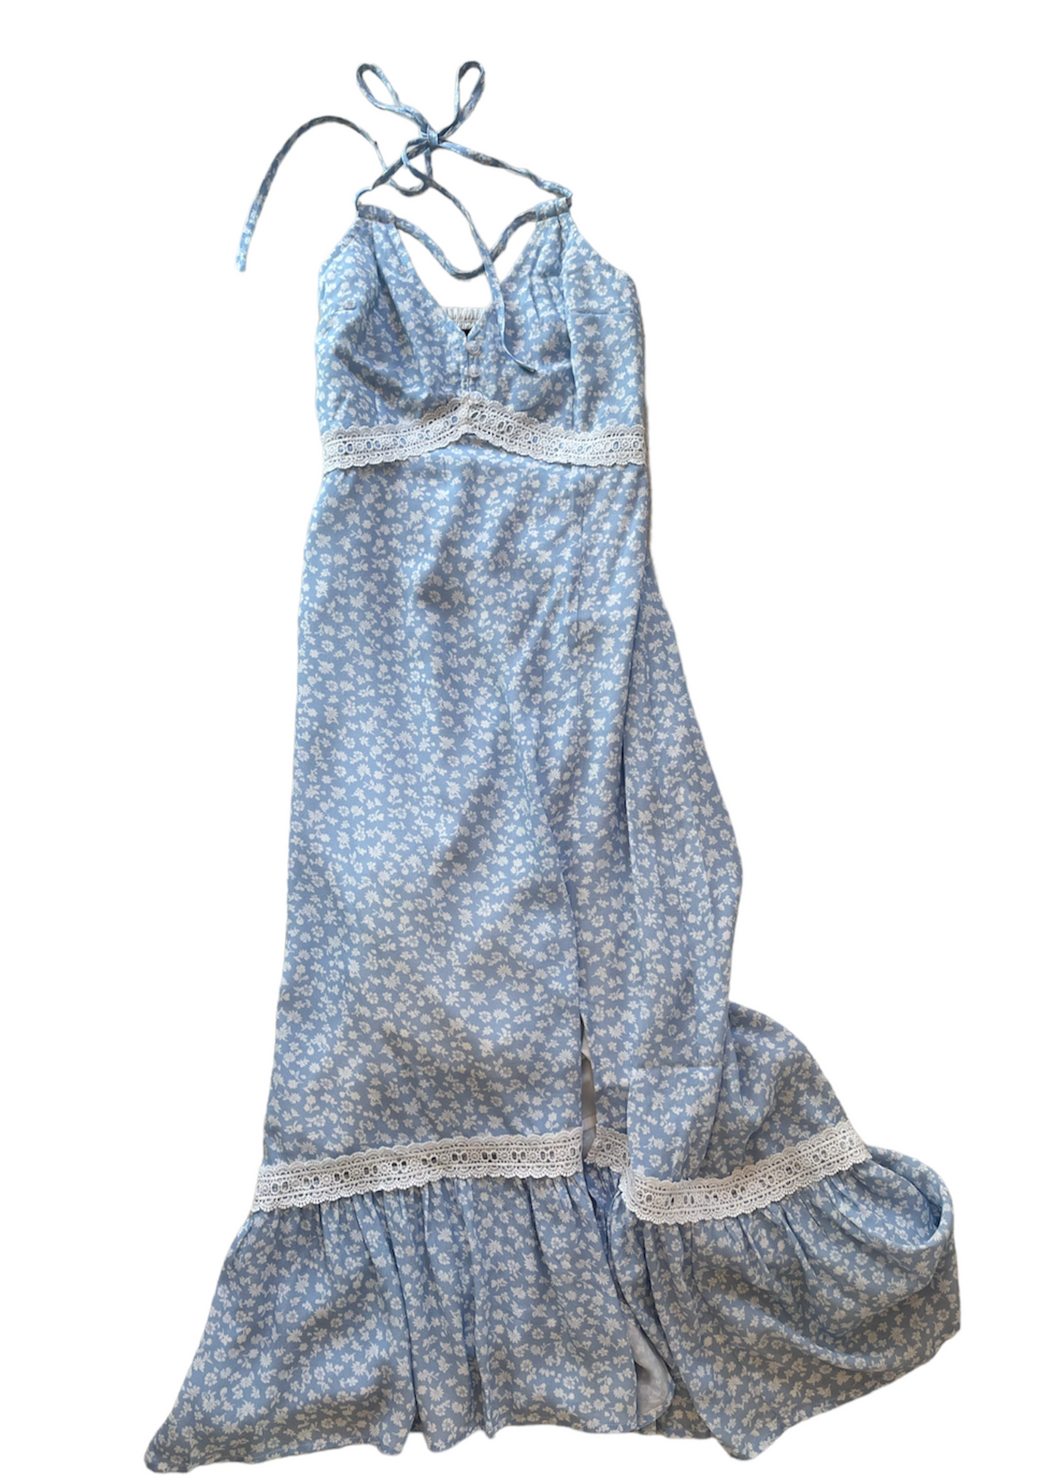 Katie J Tween Georgia Dress in Blue Ditsy Floral